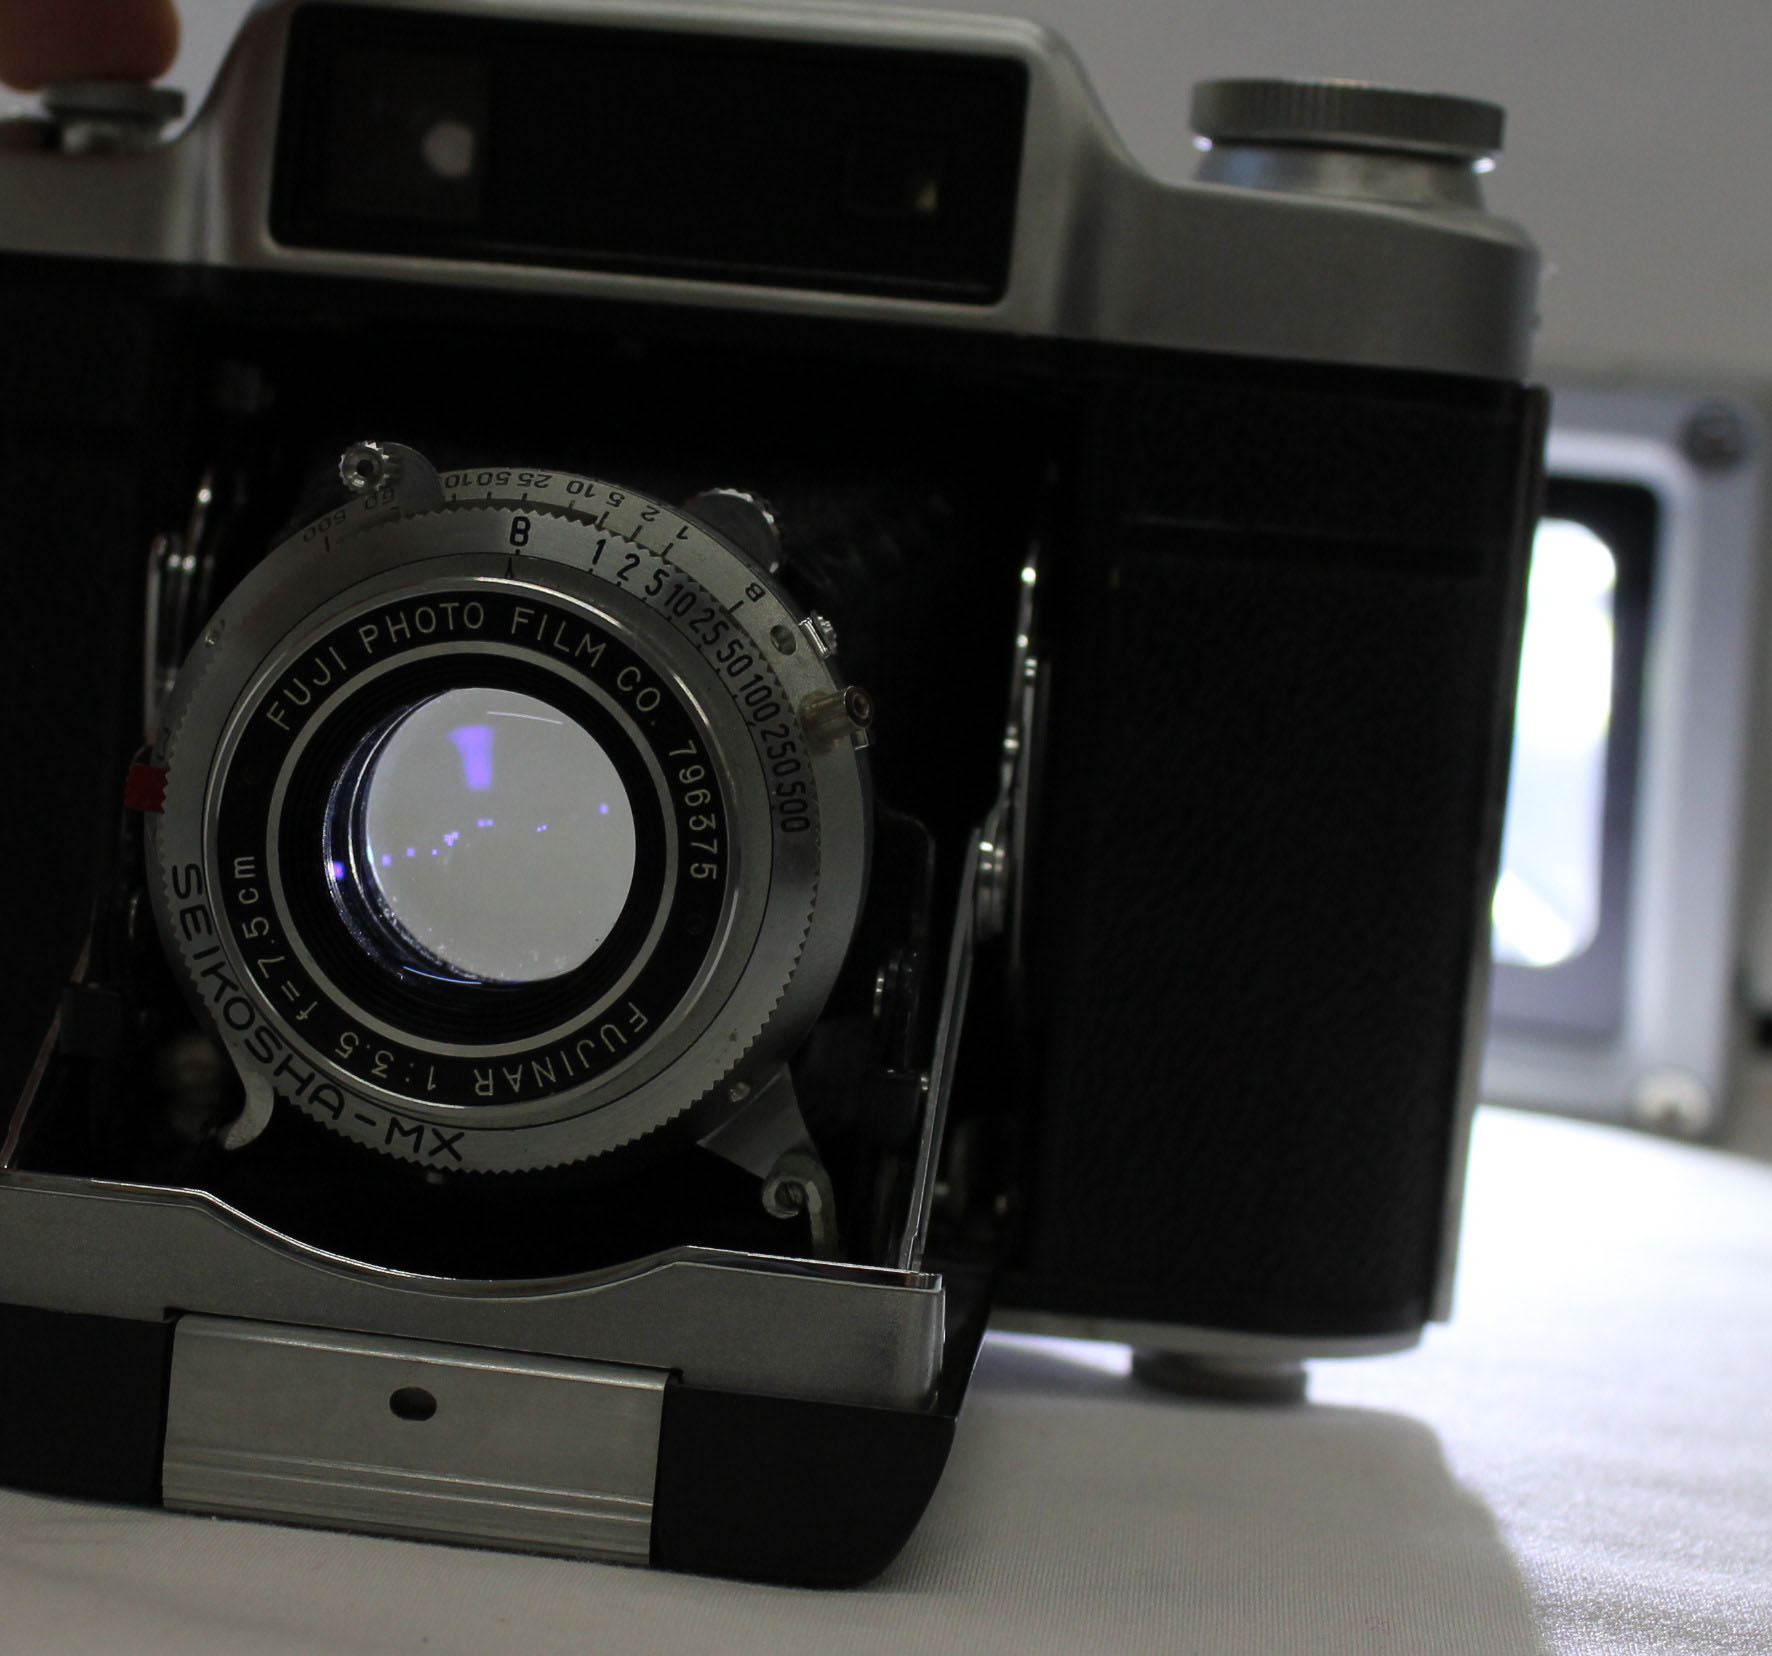  Fuji Super Fujica-6 Six 6x6 Medium Format Film Camera with Fujinar 75mm F/3.5 from Japan Photo 15